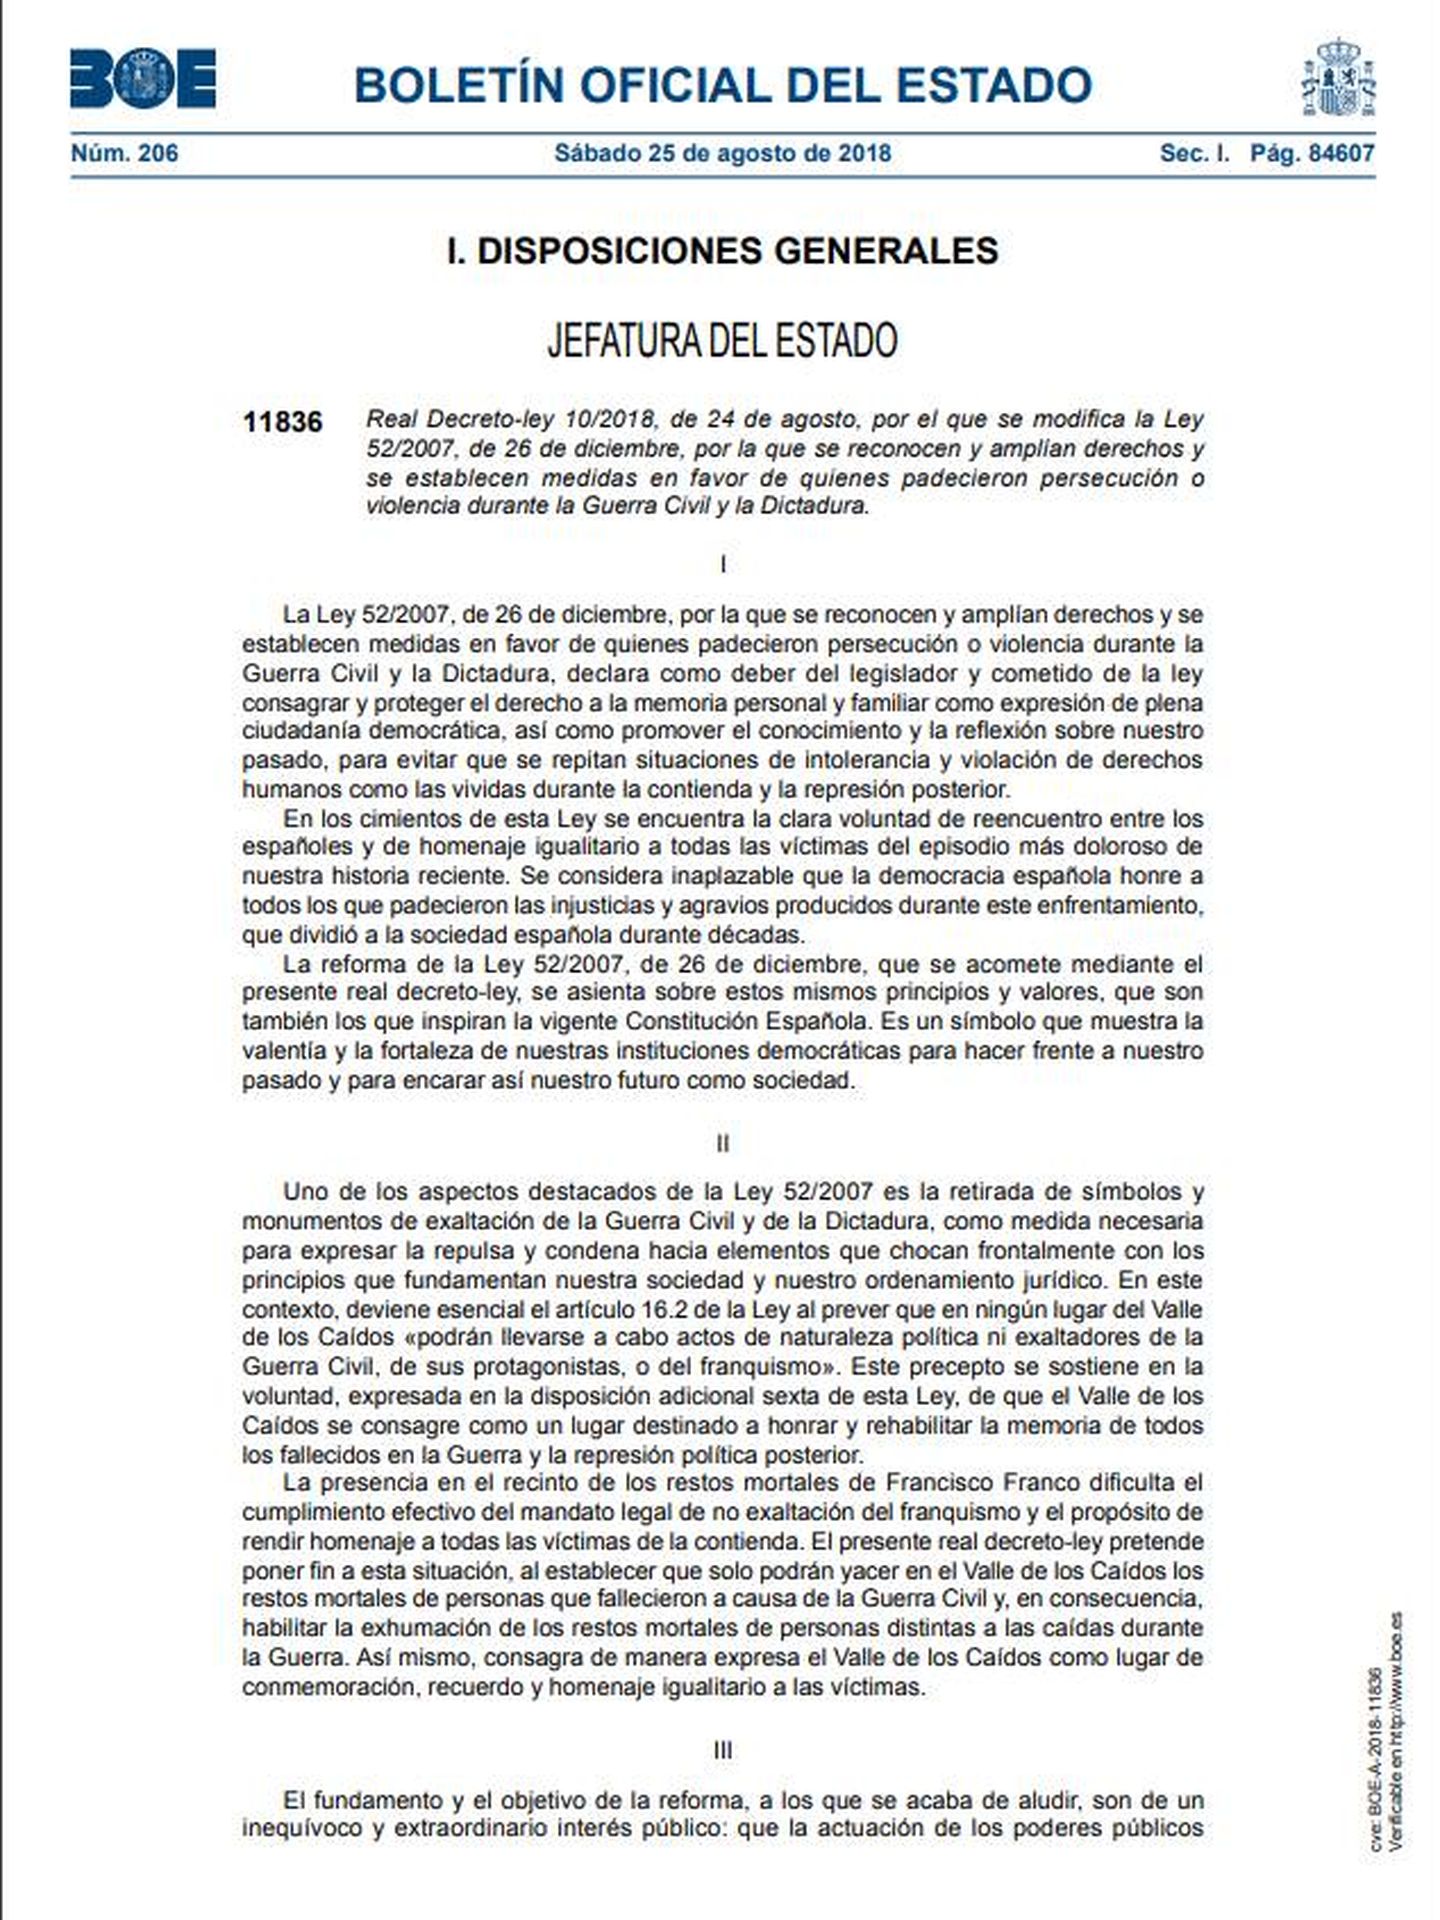 Pinche aquí para leer en PDF el real decreto ley de exhumación de Francisco Franco. 